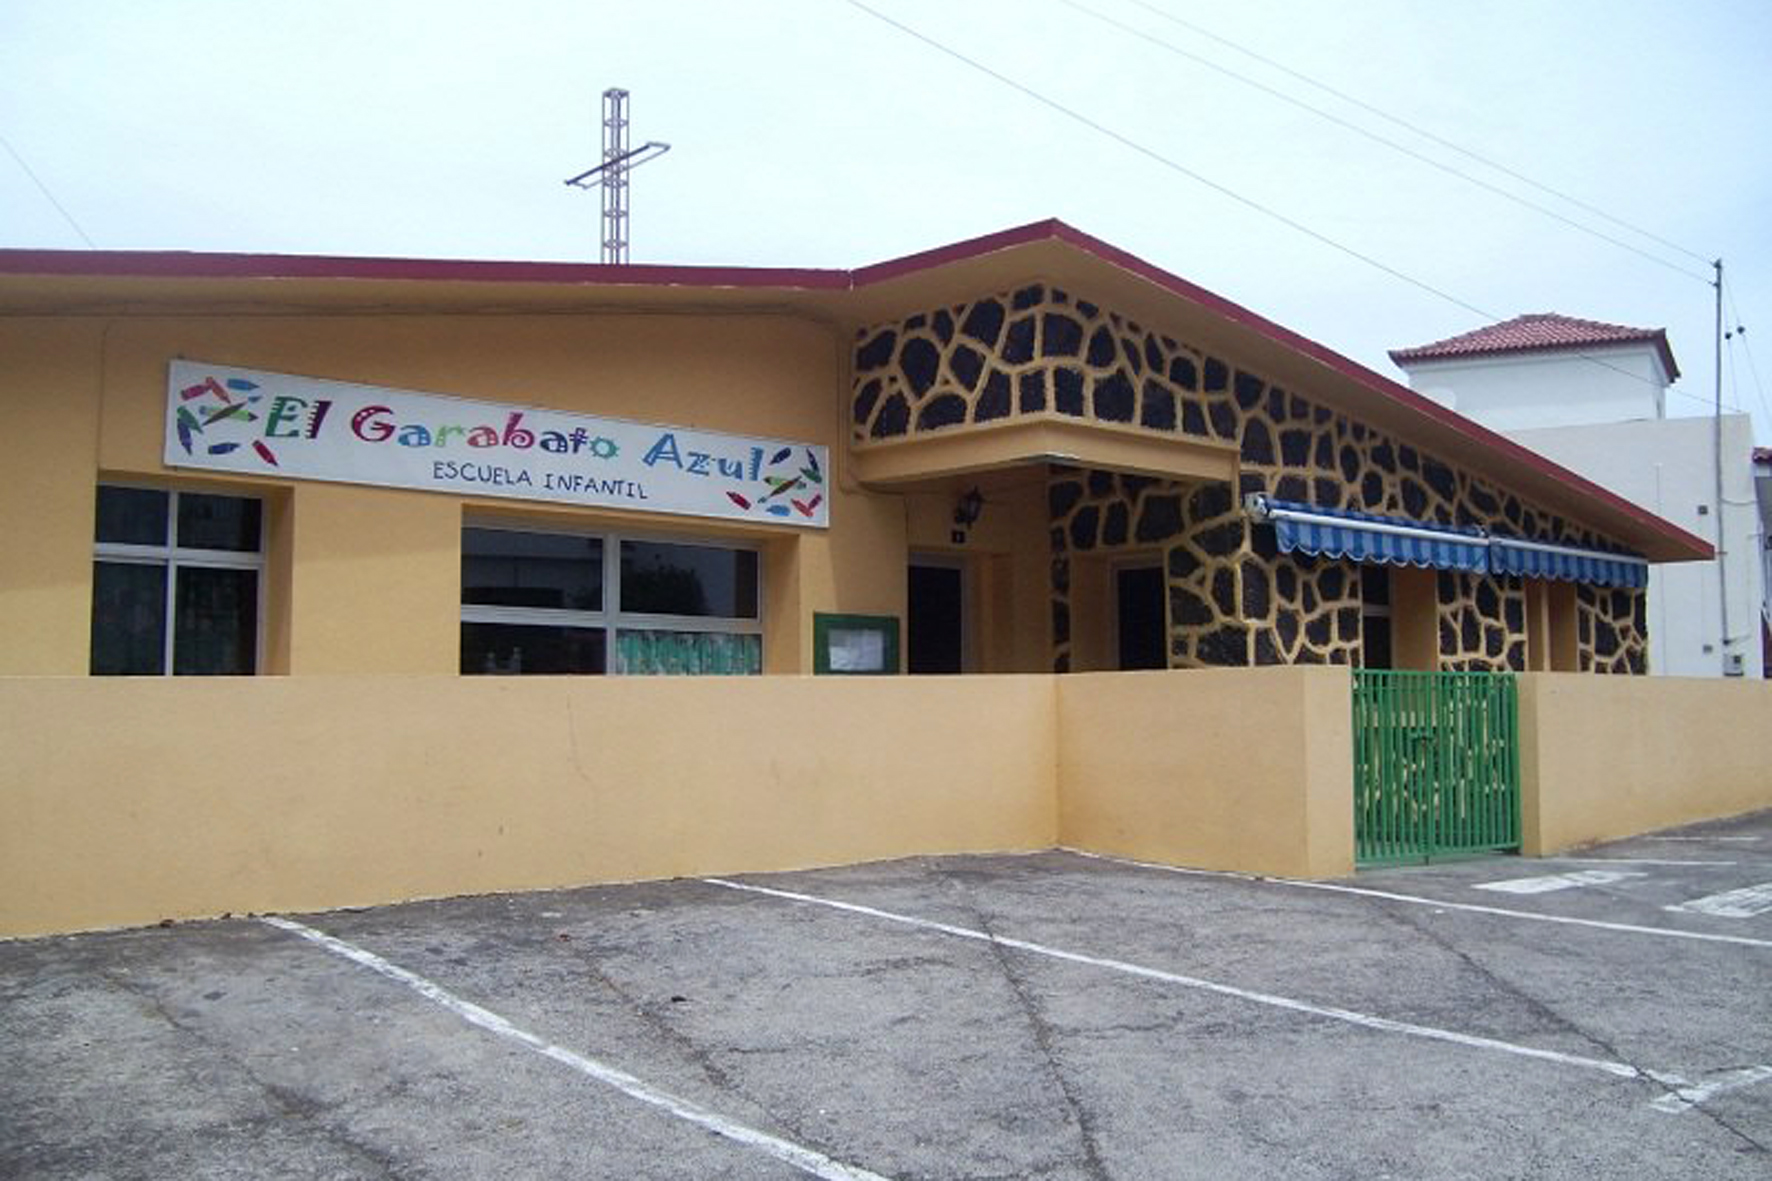 La Frontera abre el plazo de inscripción para la escuela infantil “El Garabato Azul”